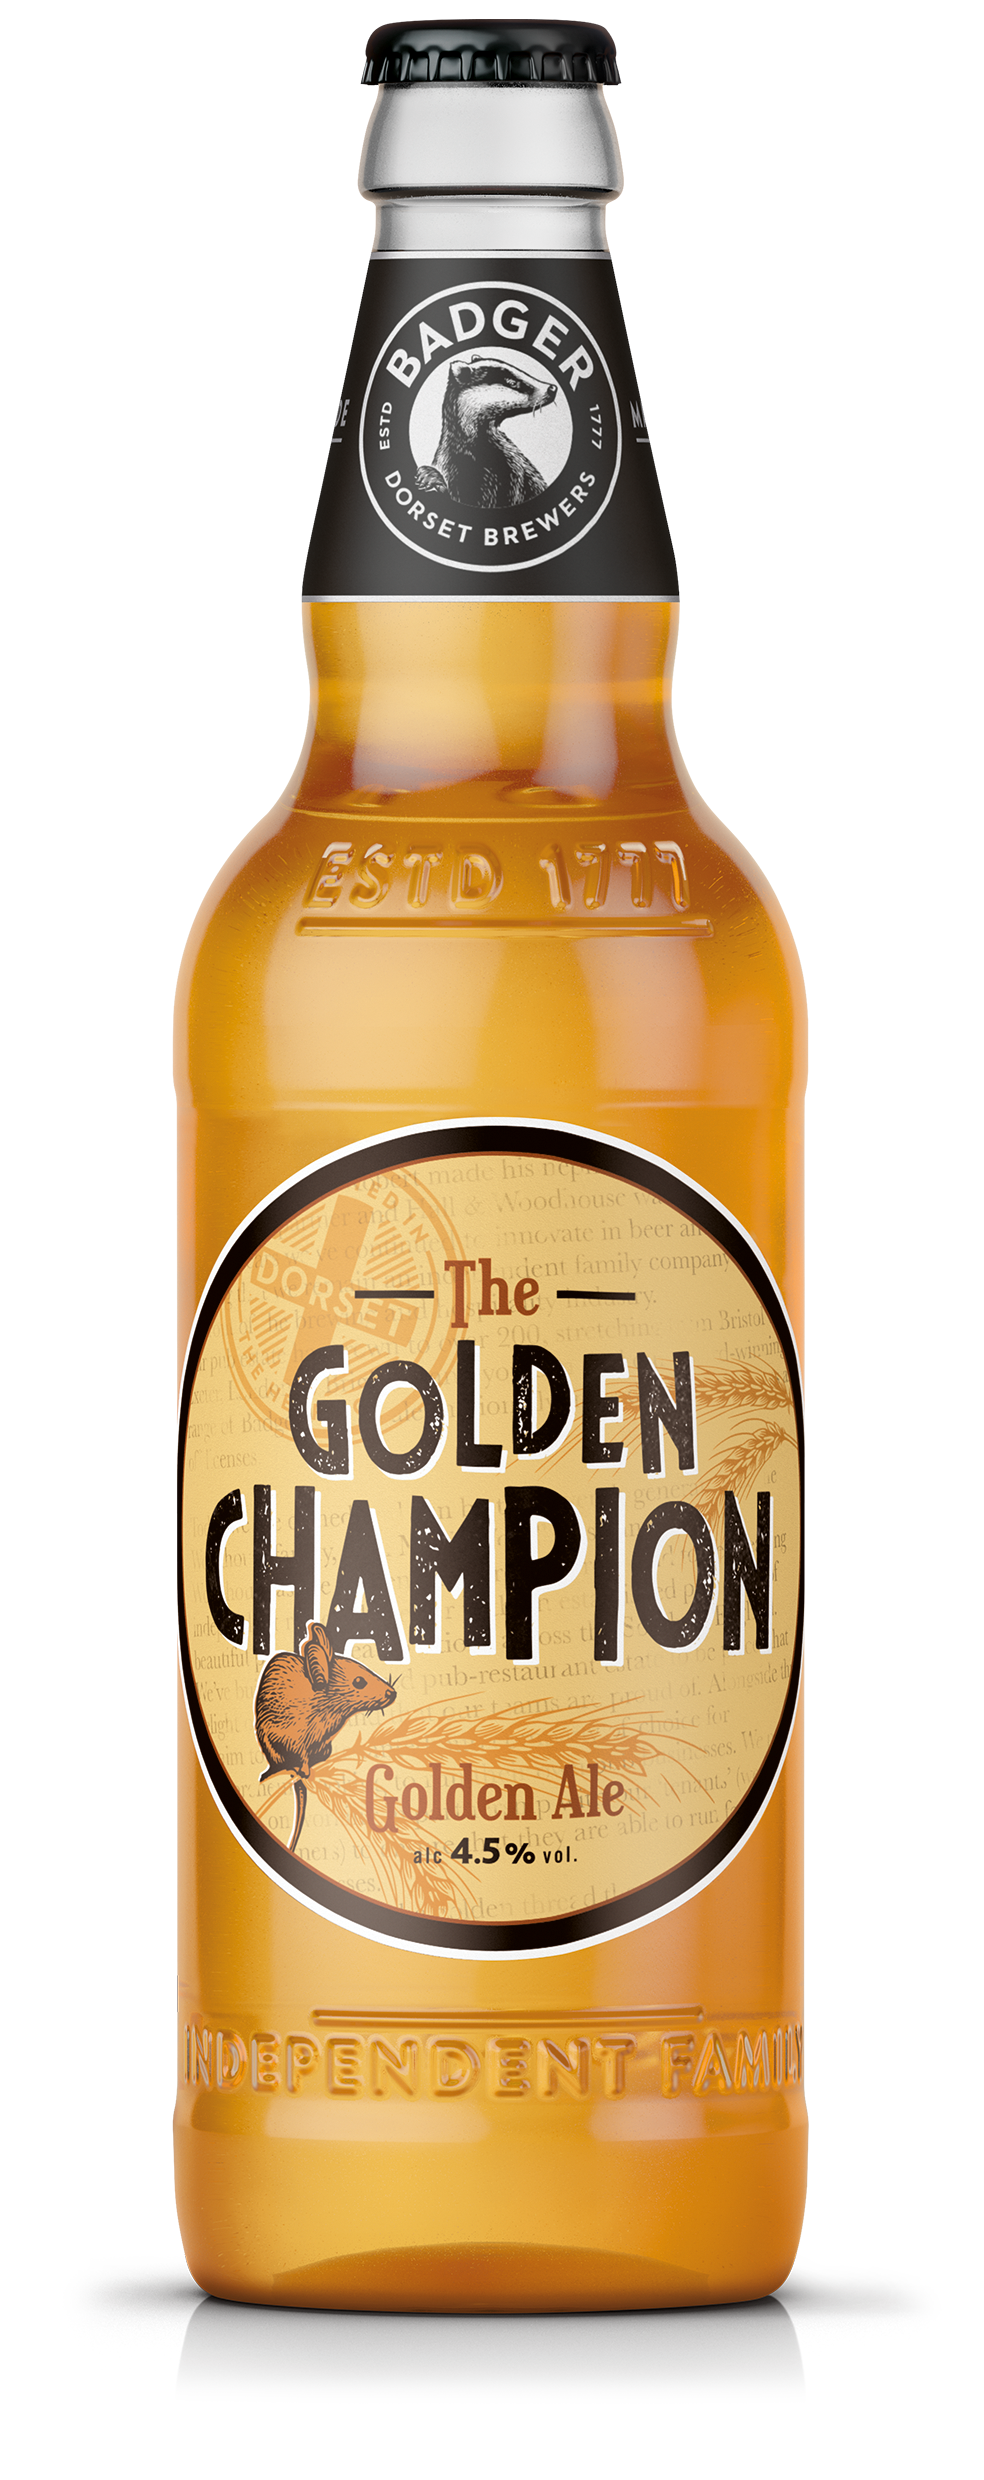 The Golden Champion Bottle